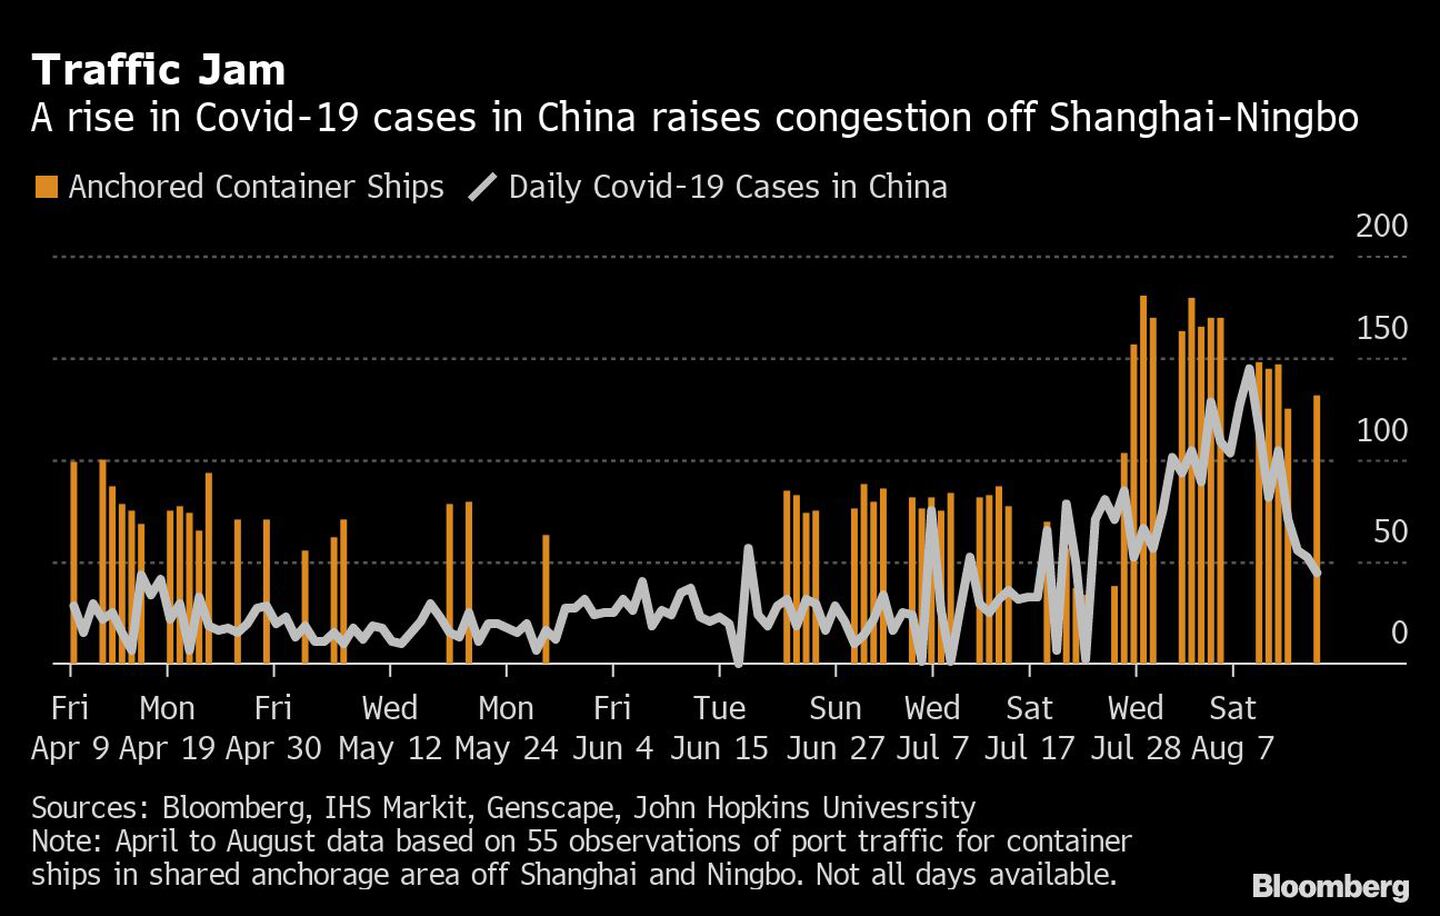 El aumento de los casos de Covid-19 en China aumenta la congestión en Shanghái-Ningbo

Naranja: buques contenedores anclados
Blanco: casos diarios de Covid-19 en Chinadfd